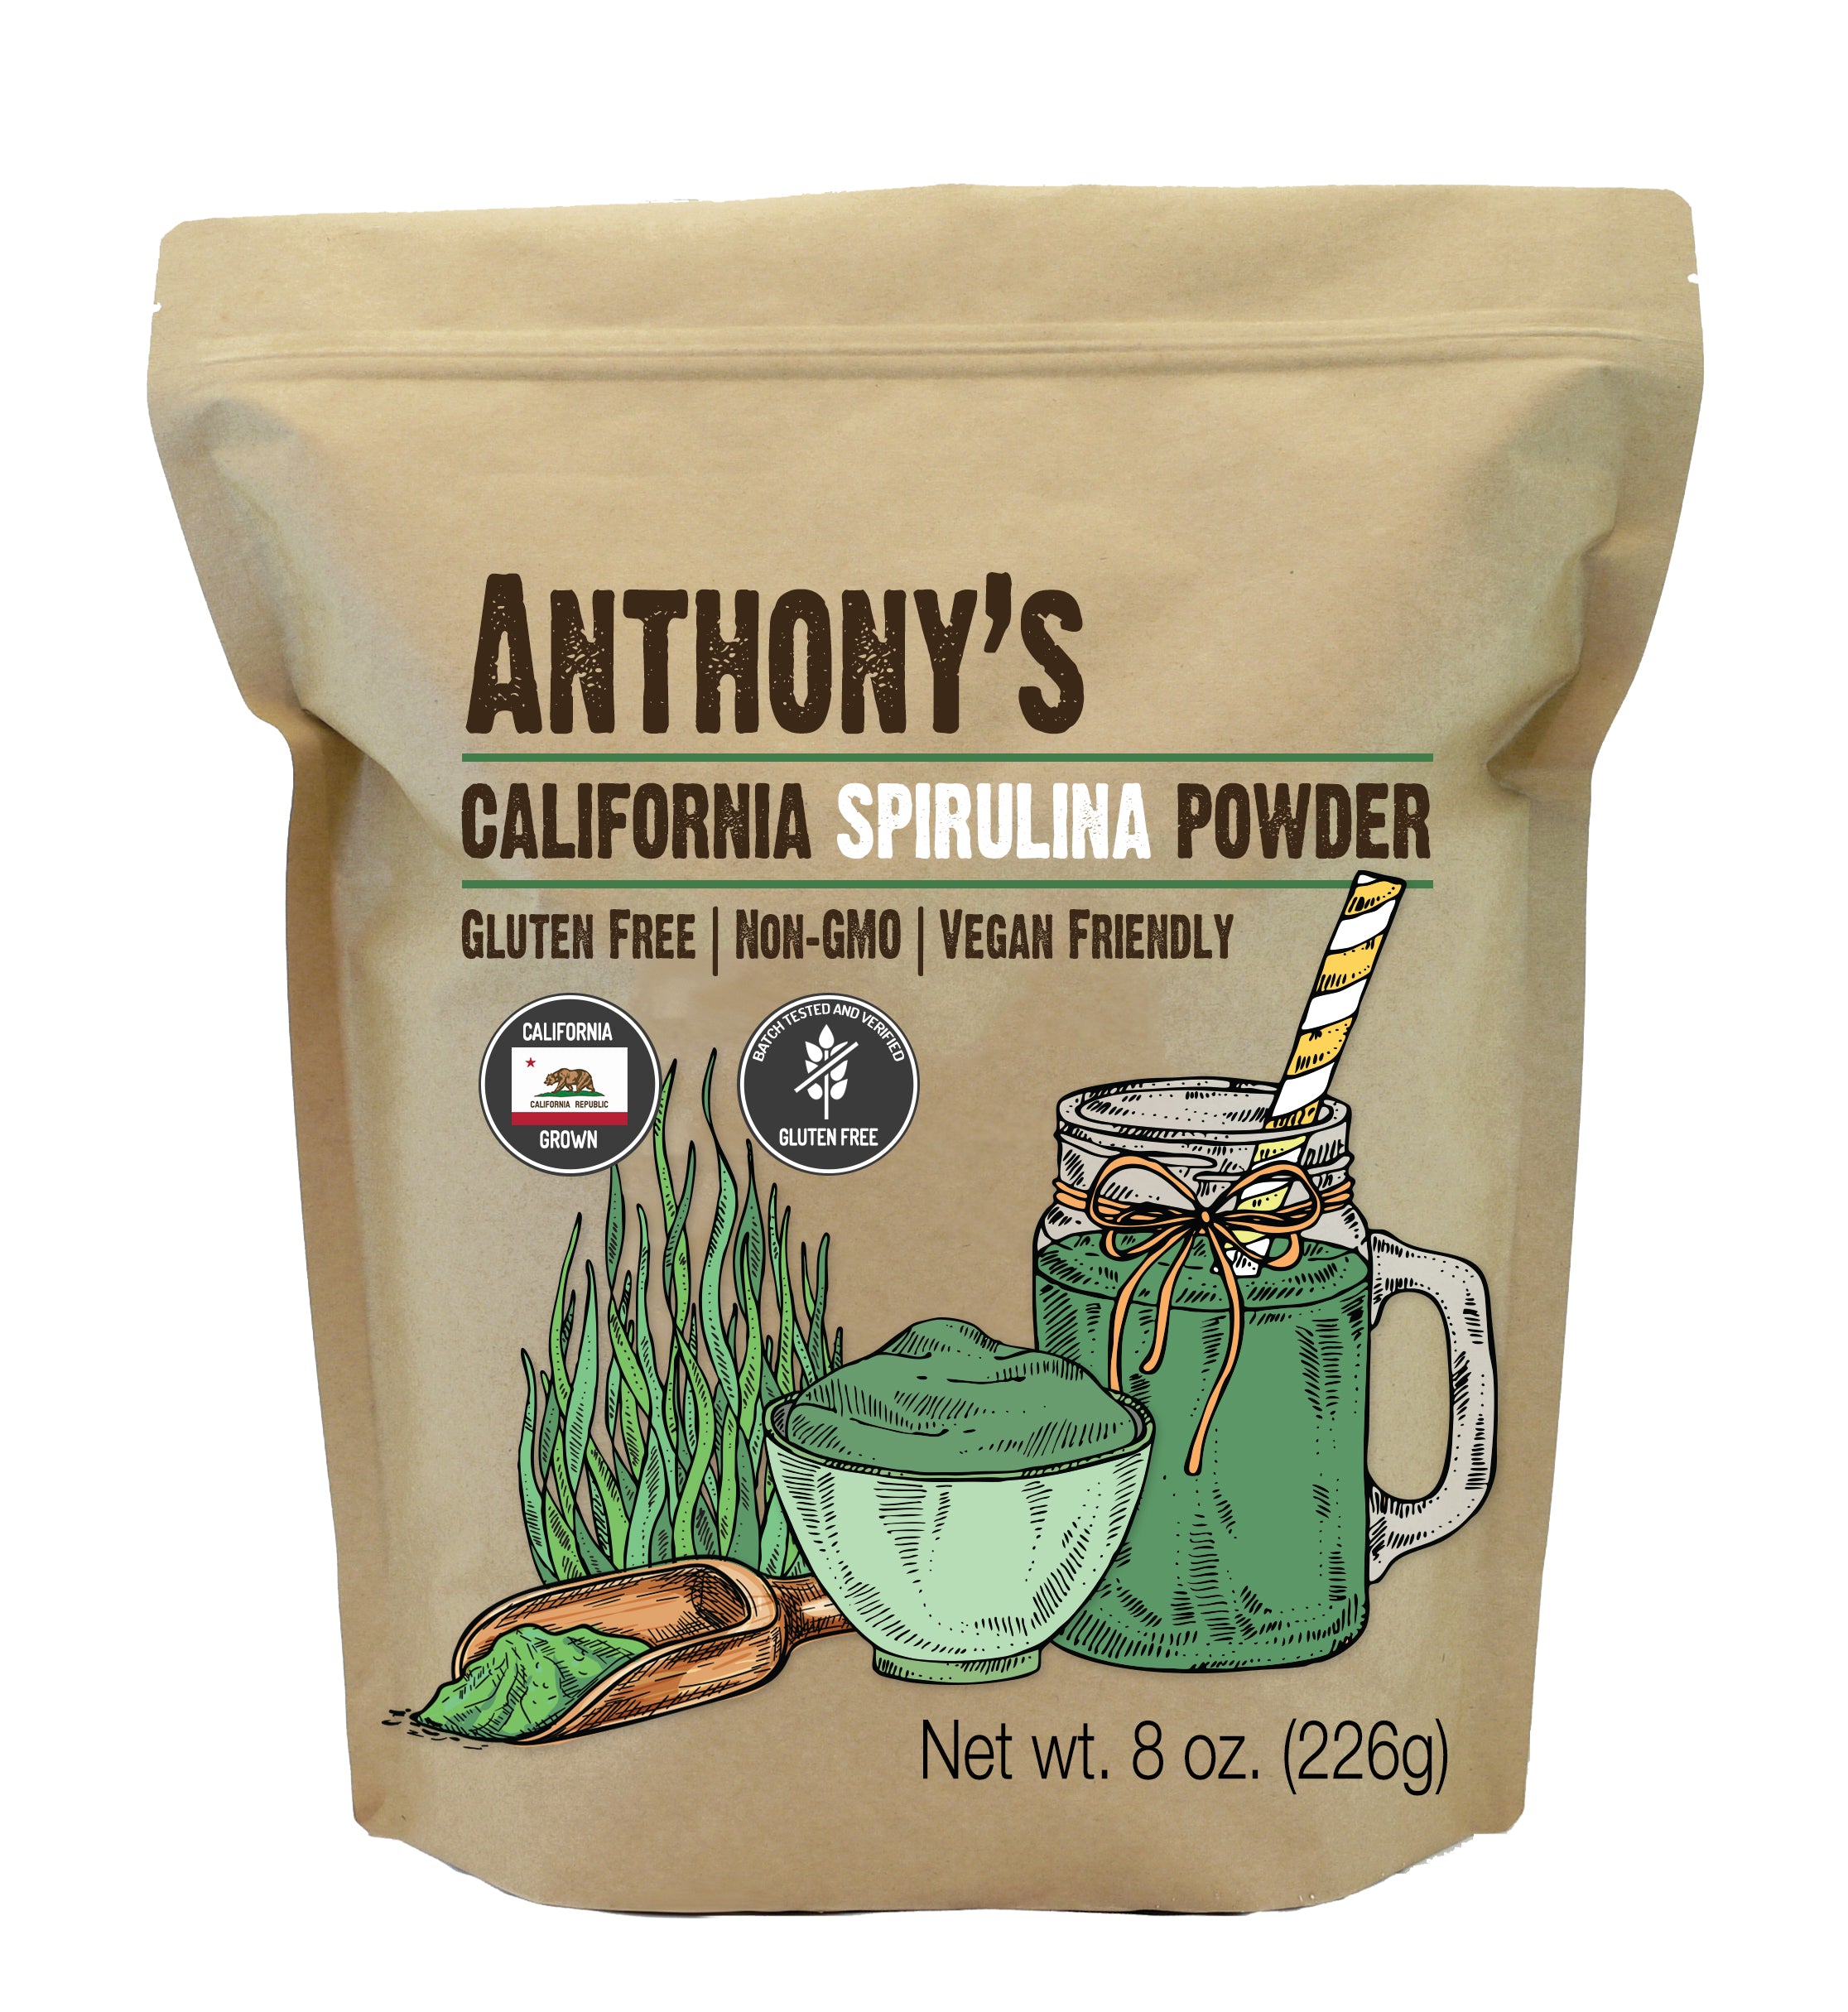 Schrijfmachine bak volume California Spirulina Powder: Batch Tested and Verified Gluten Free –  Anthonys Goods